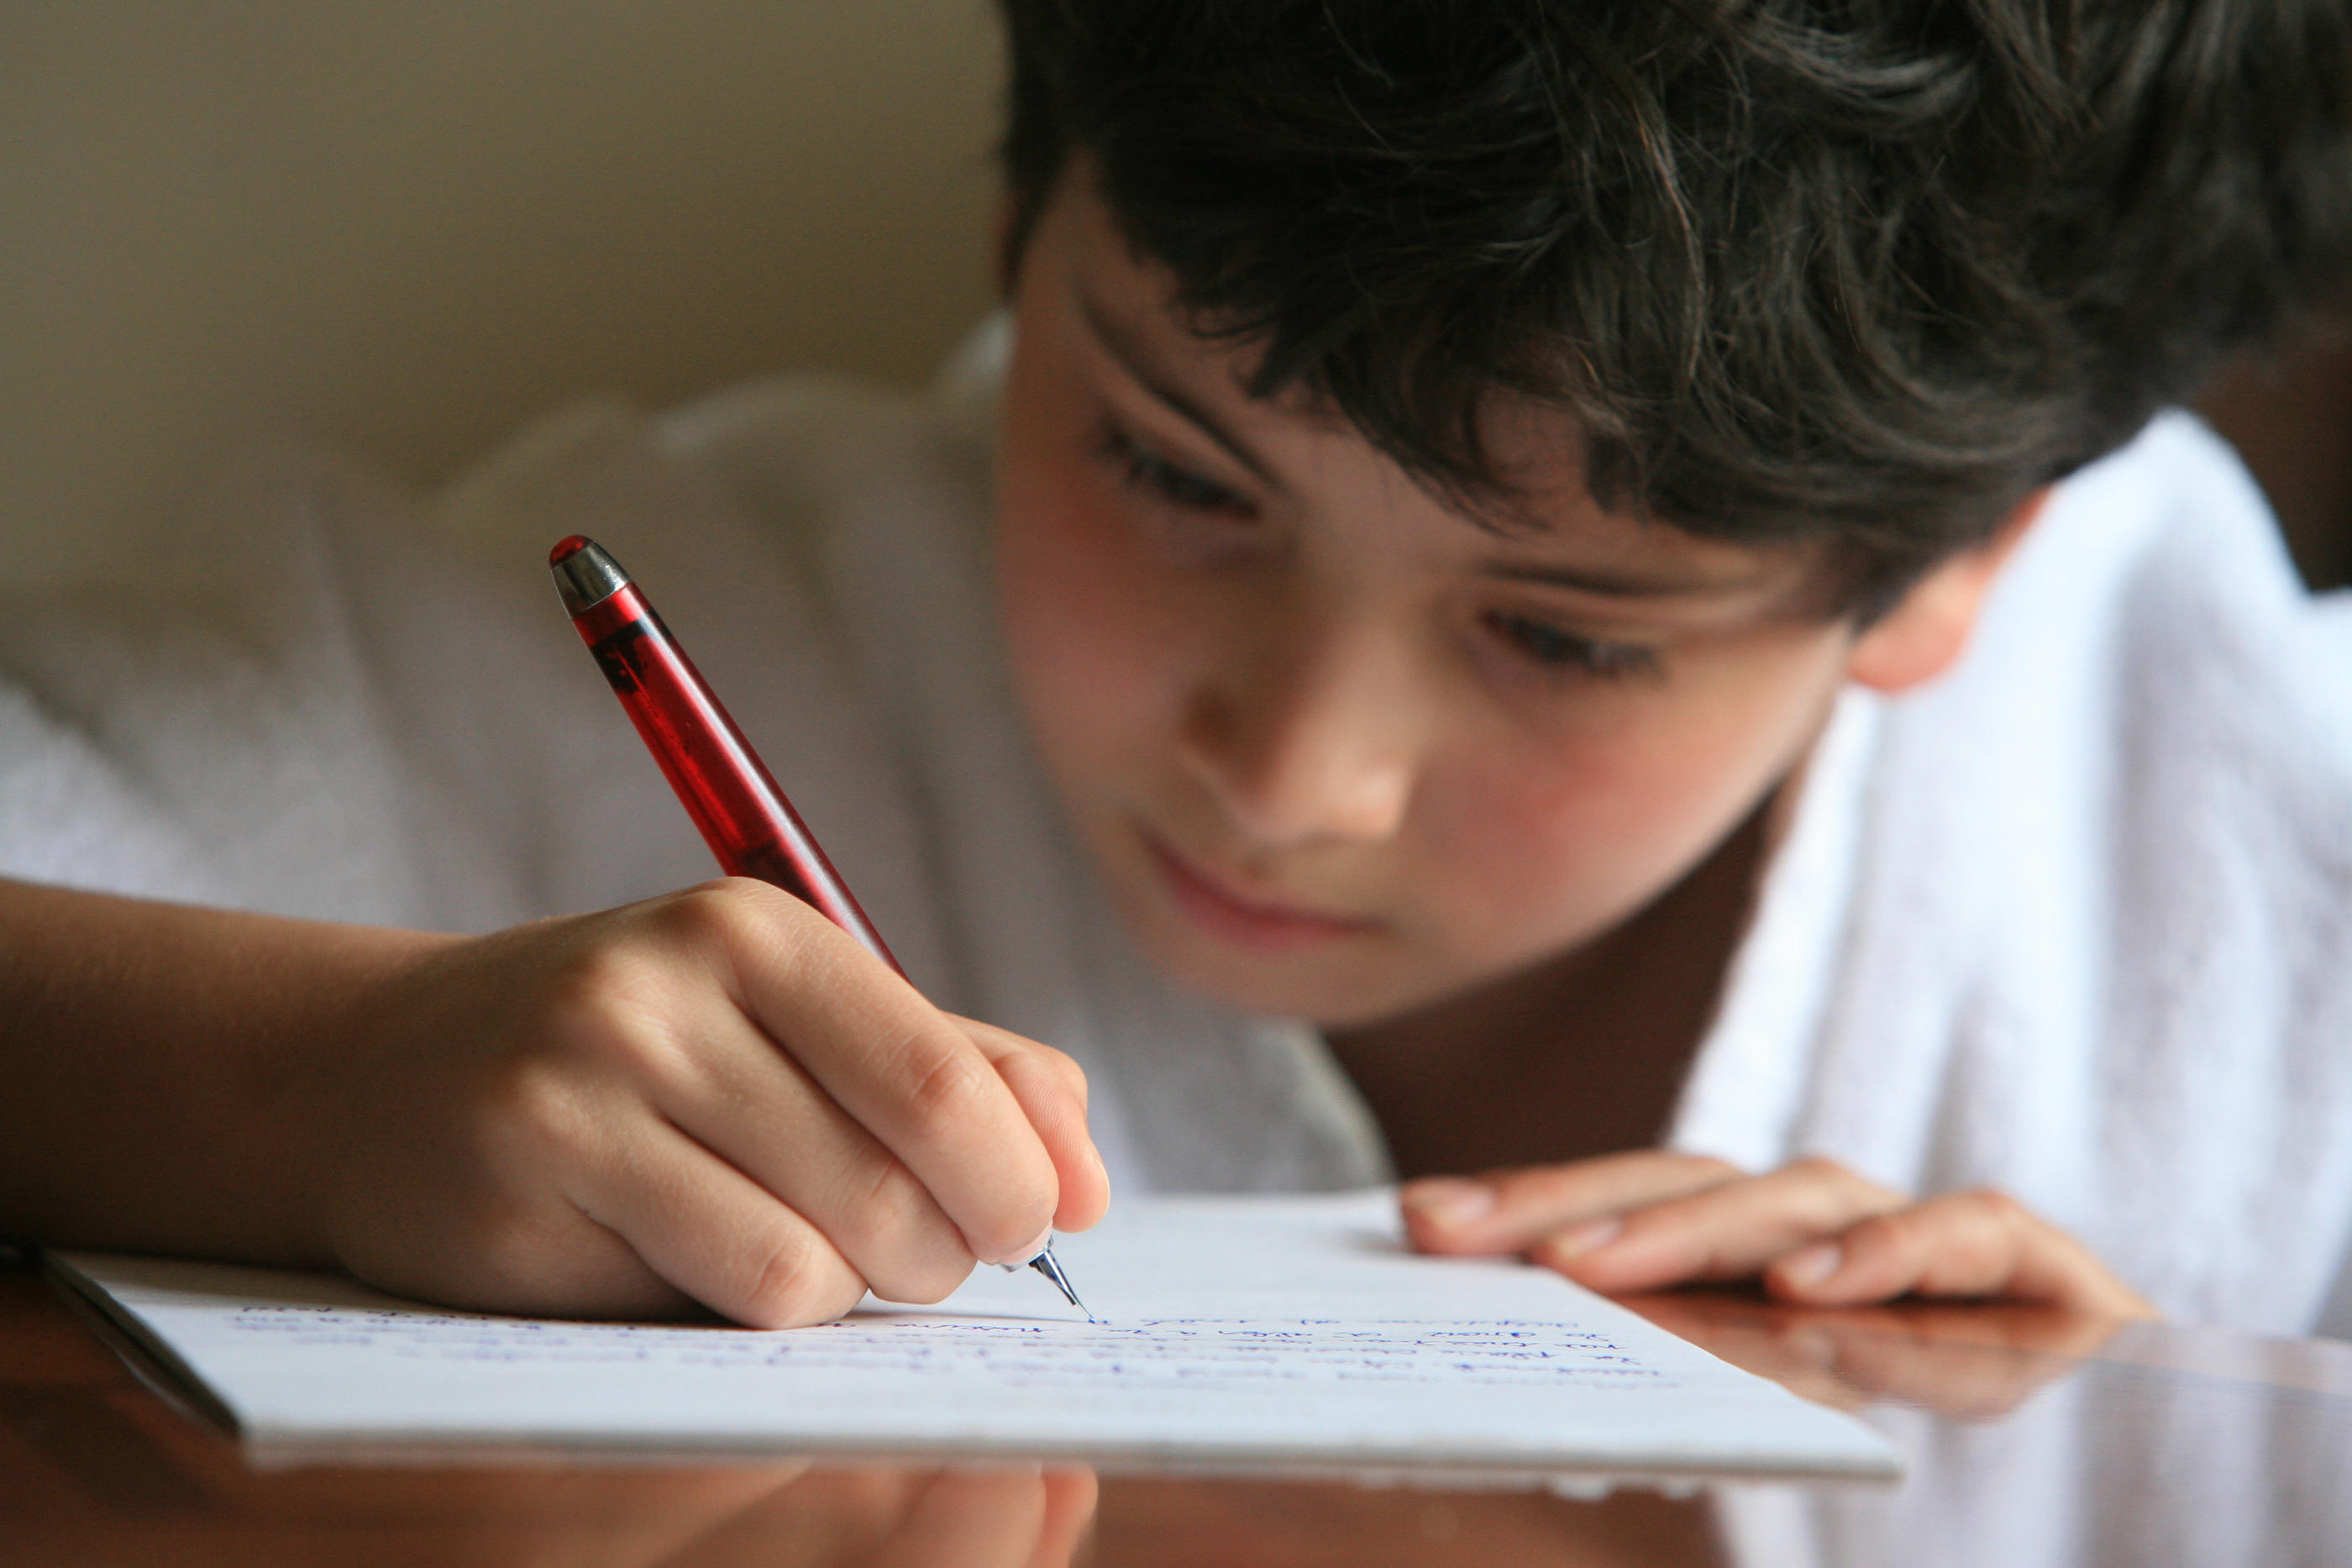 L'écriture à la main a de nombreuses vertus pour les enfants, notamment celle de faciliter la mémorisation. (Illustration) Philippe Lissac